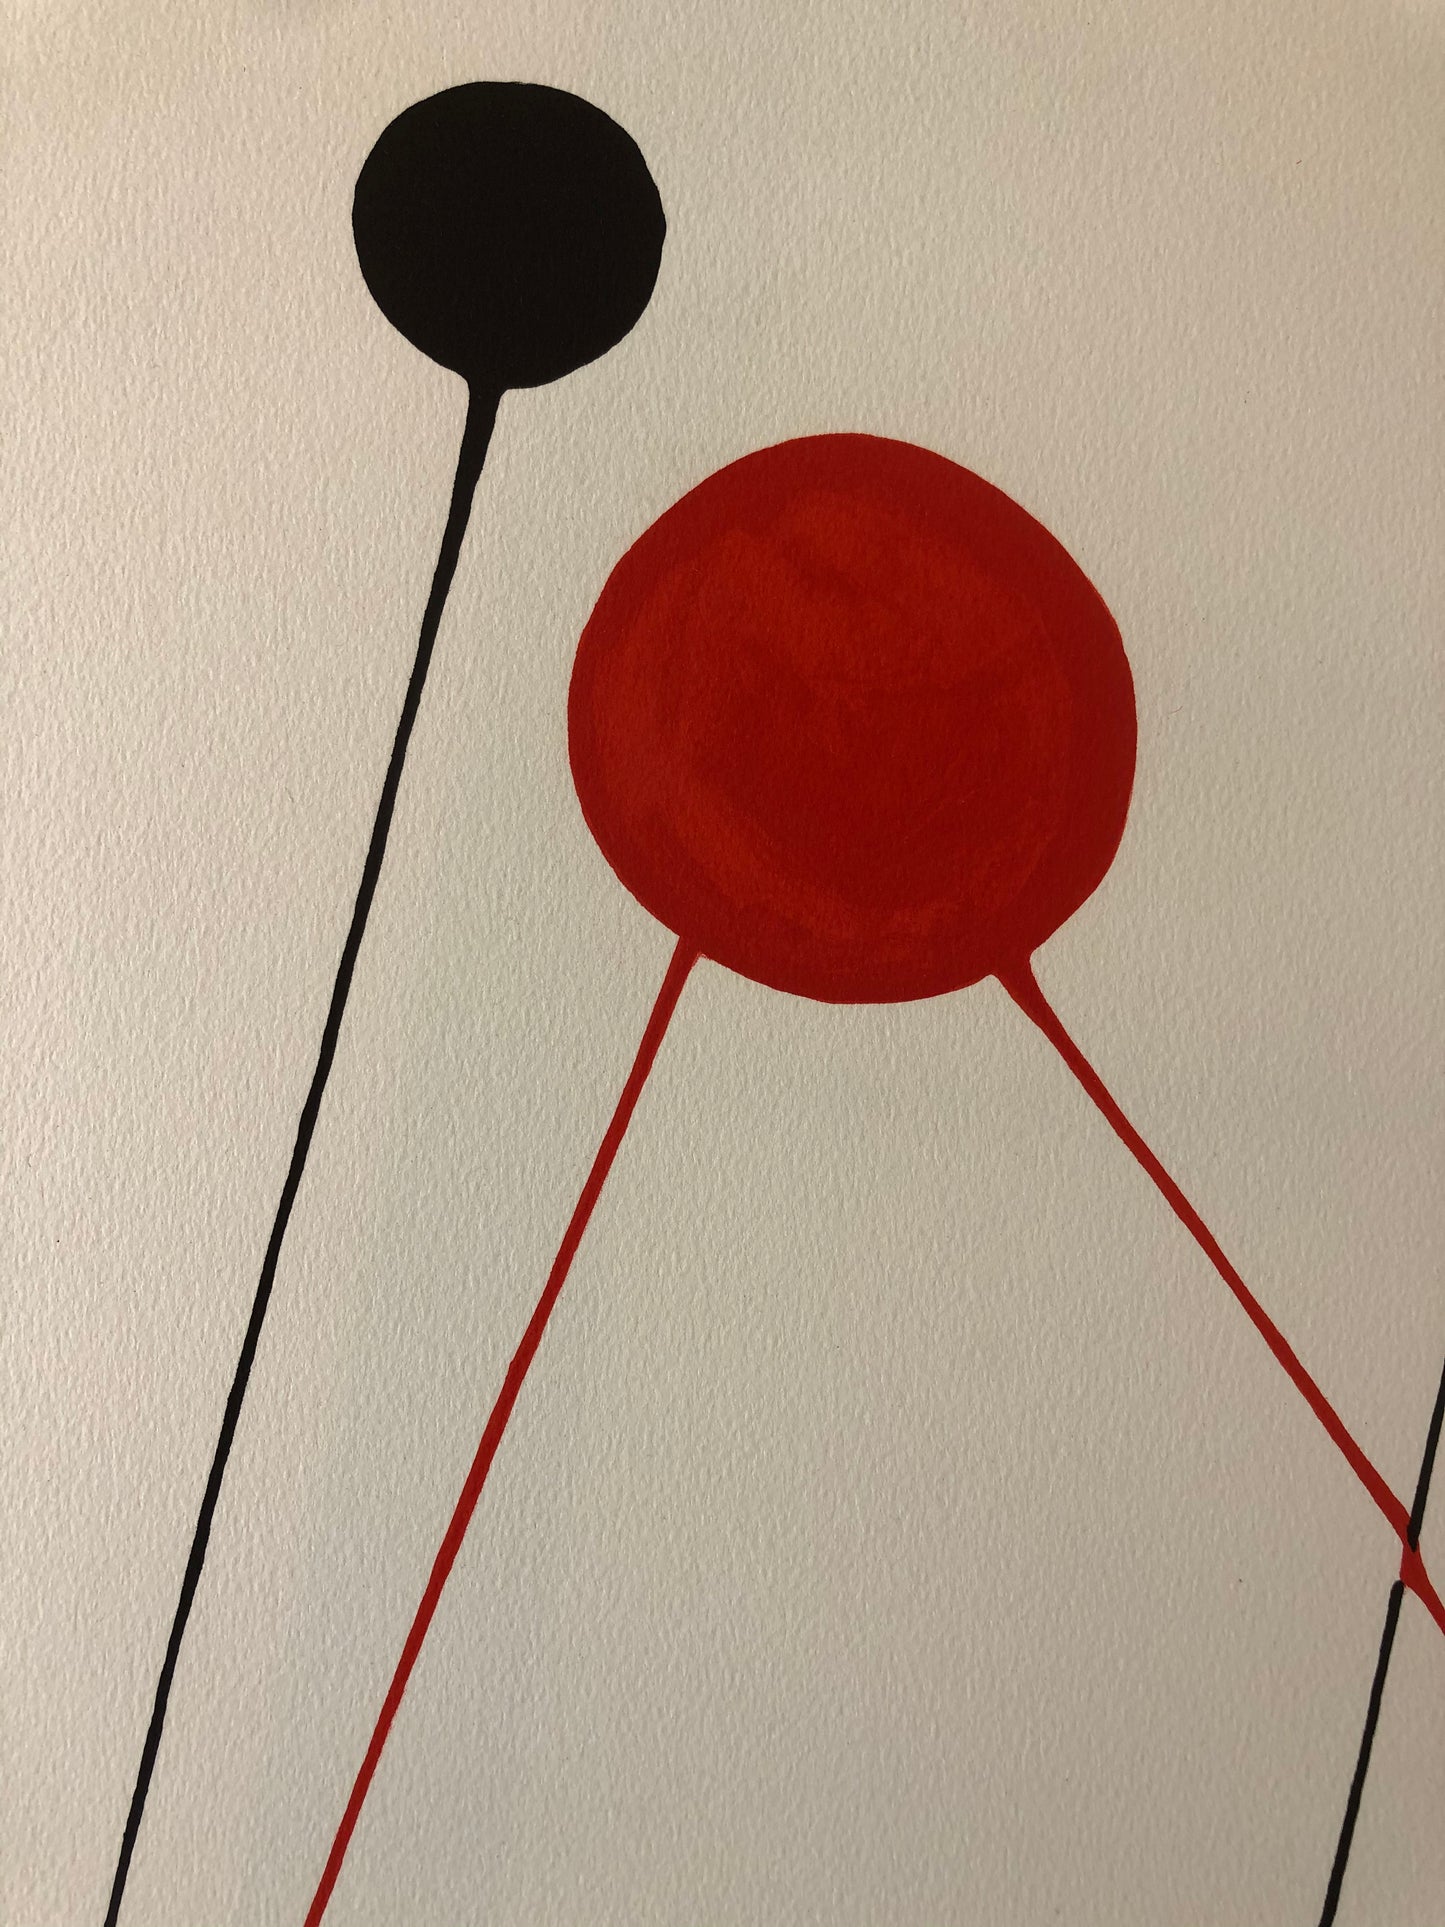 Calder Lithograph, "Balloons"